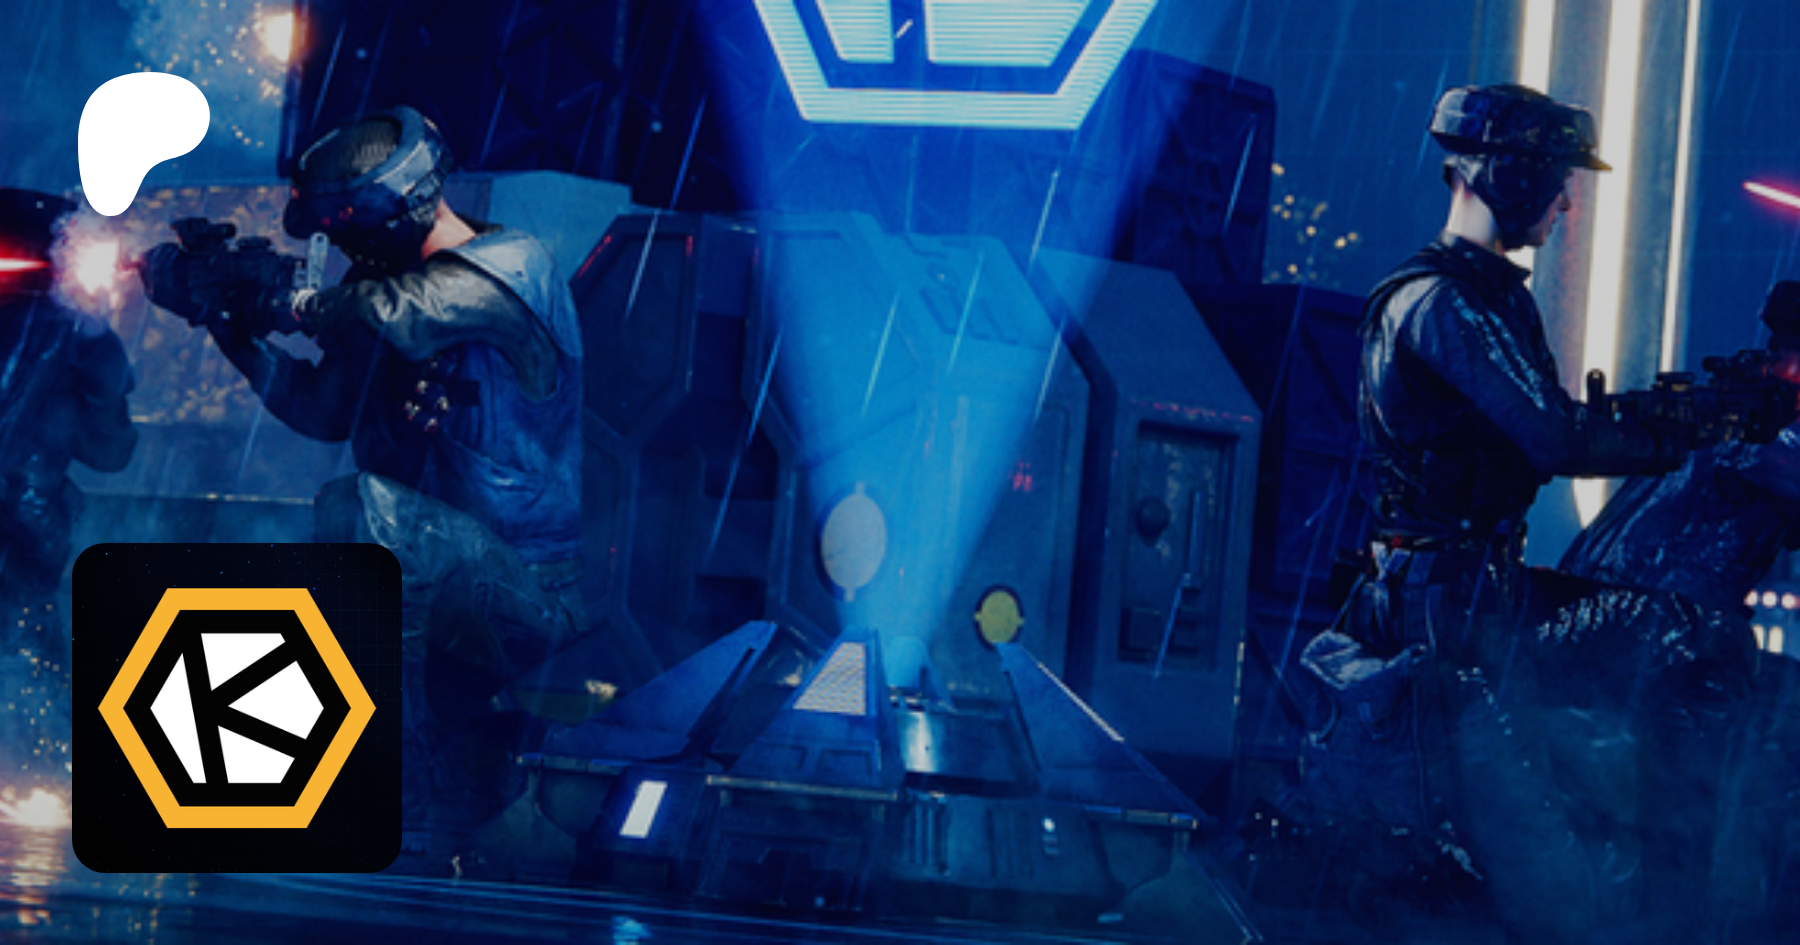 NEW way to play Star Wars Battlefront 2! Steam Deck Showcase, Facebook,  news, Patreon